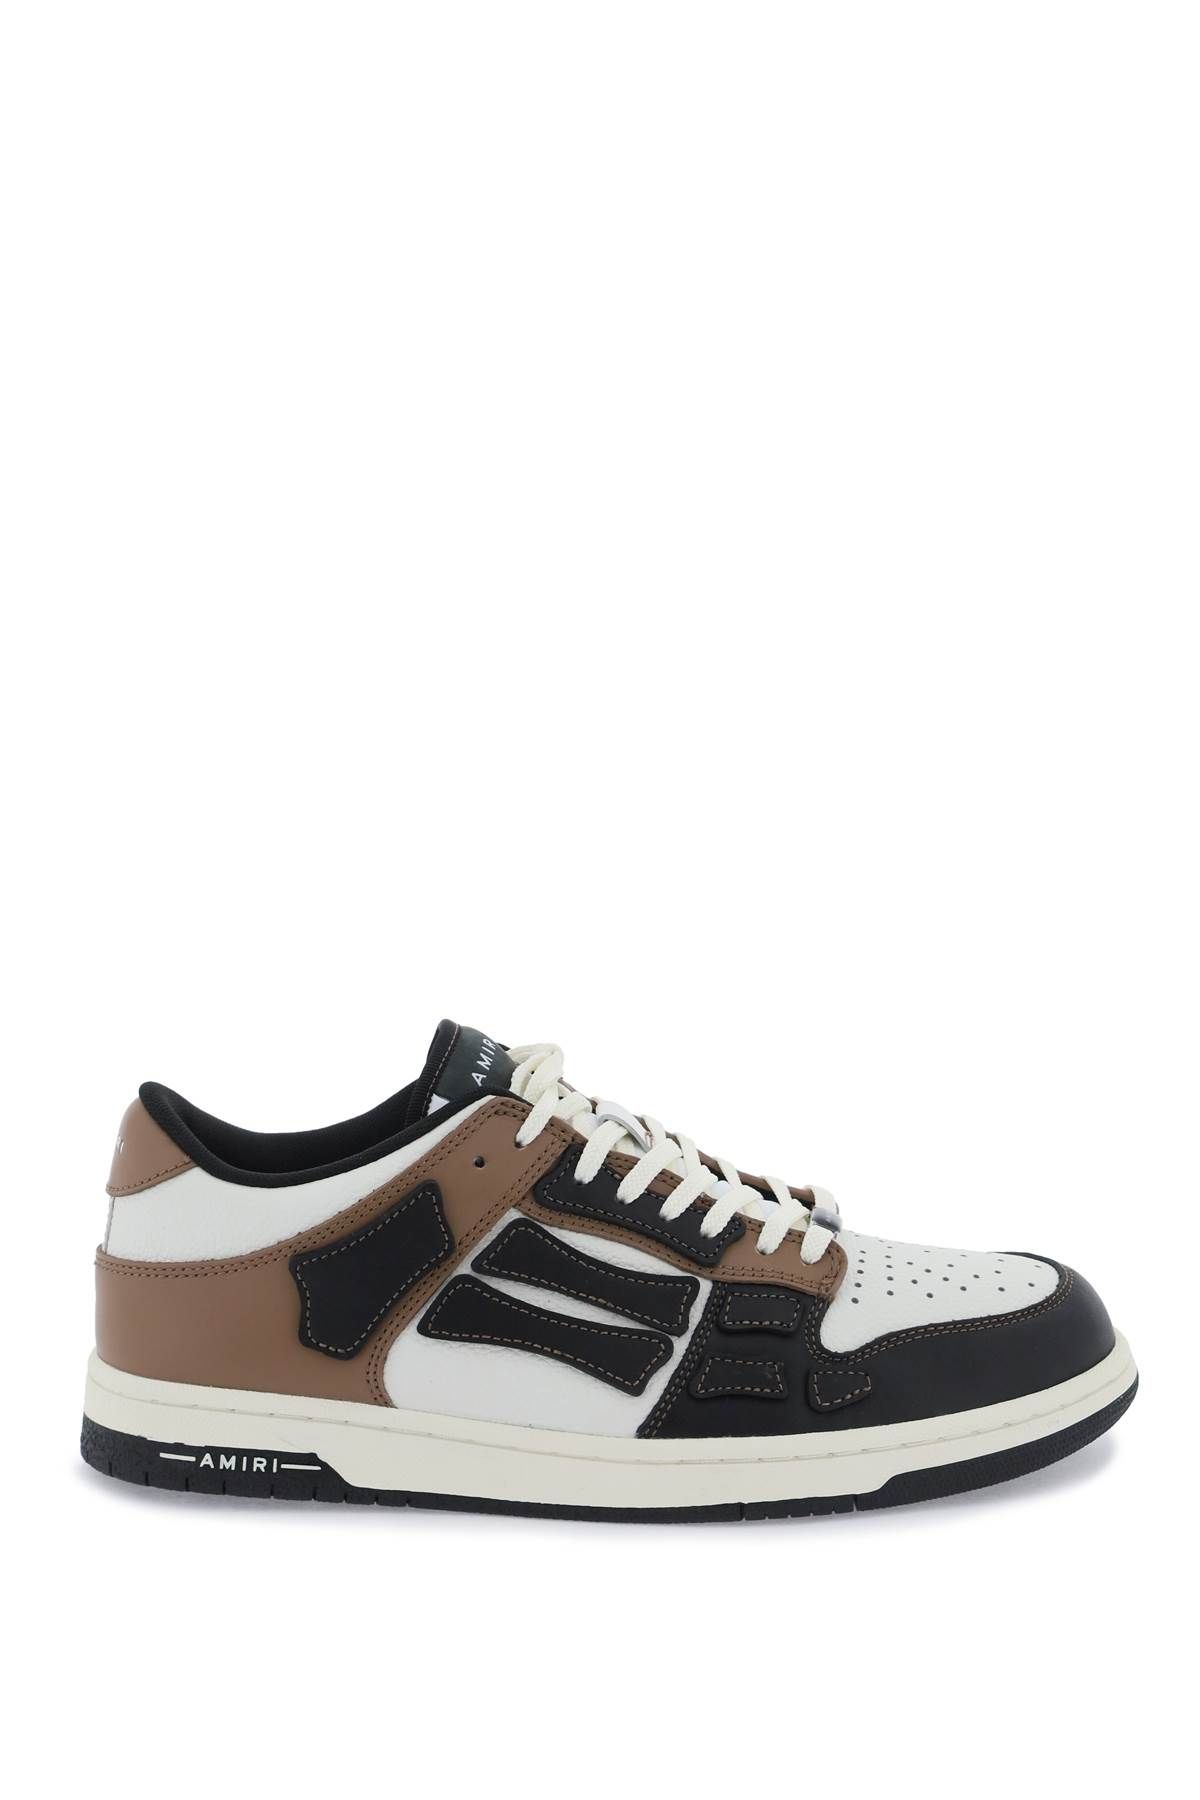 Shop Amiri Skel Top Low Sneakers In White,black,brown